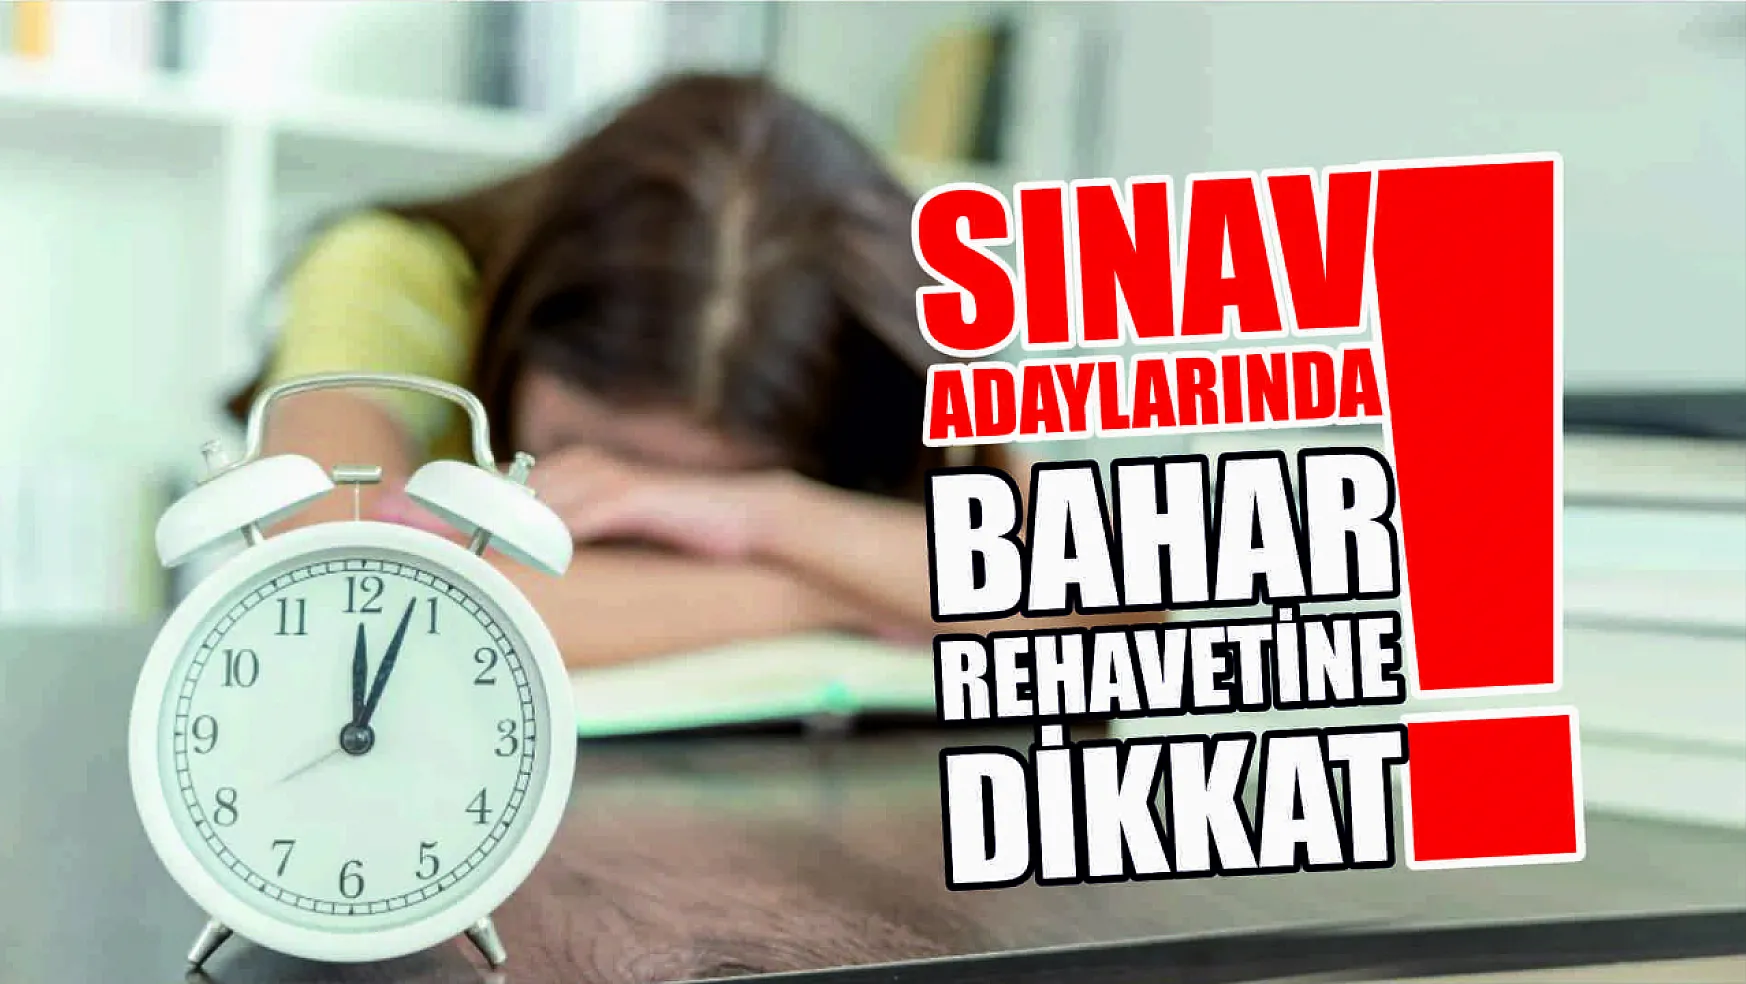 Sınav Adaylarında Bahar Rehavetine Dikkat!